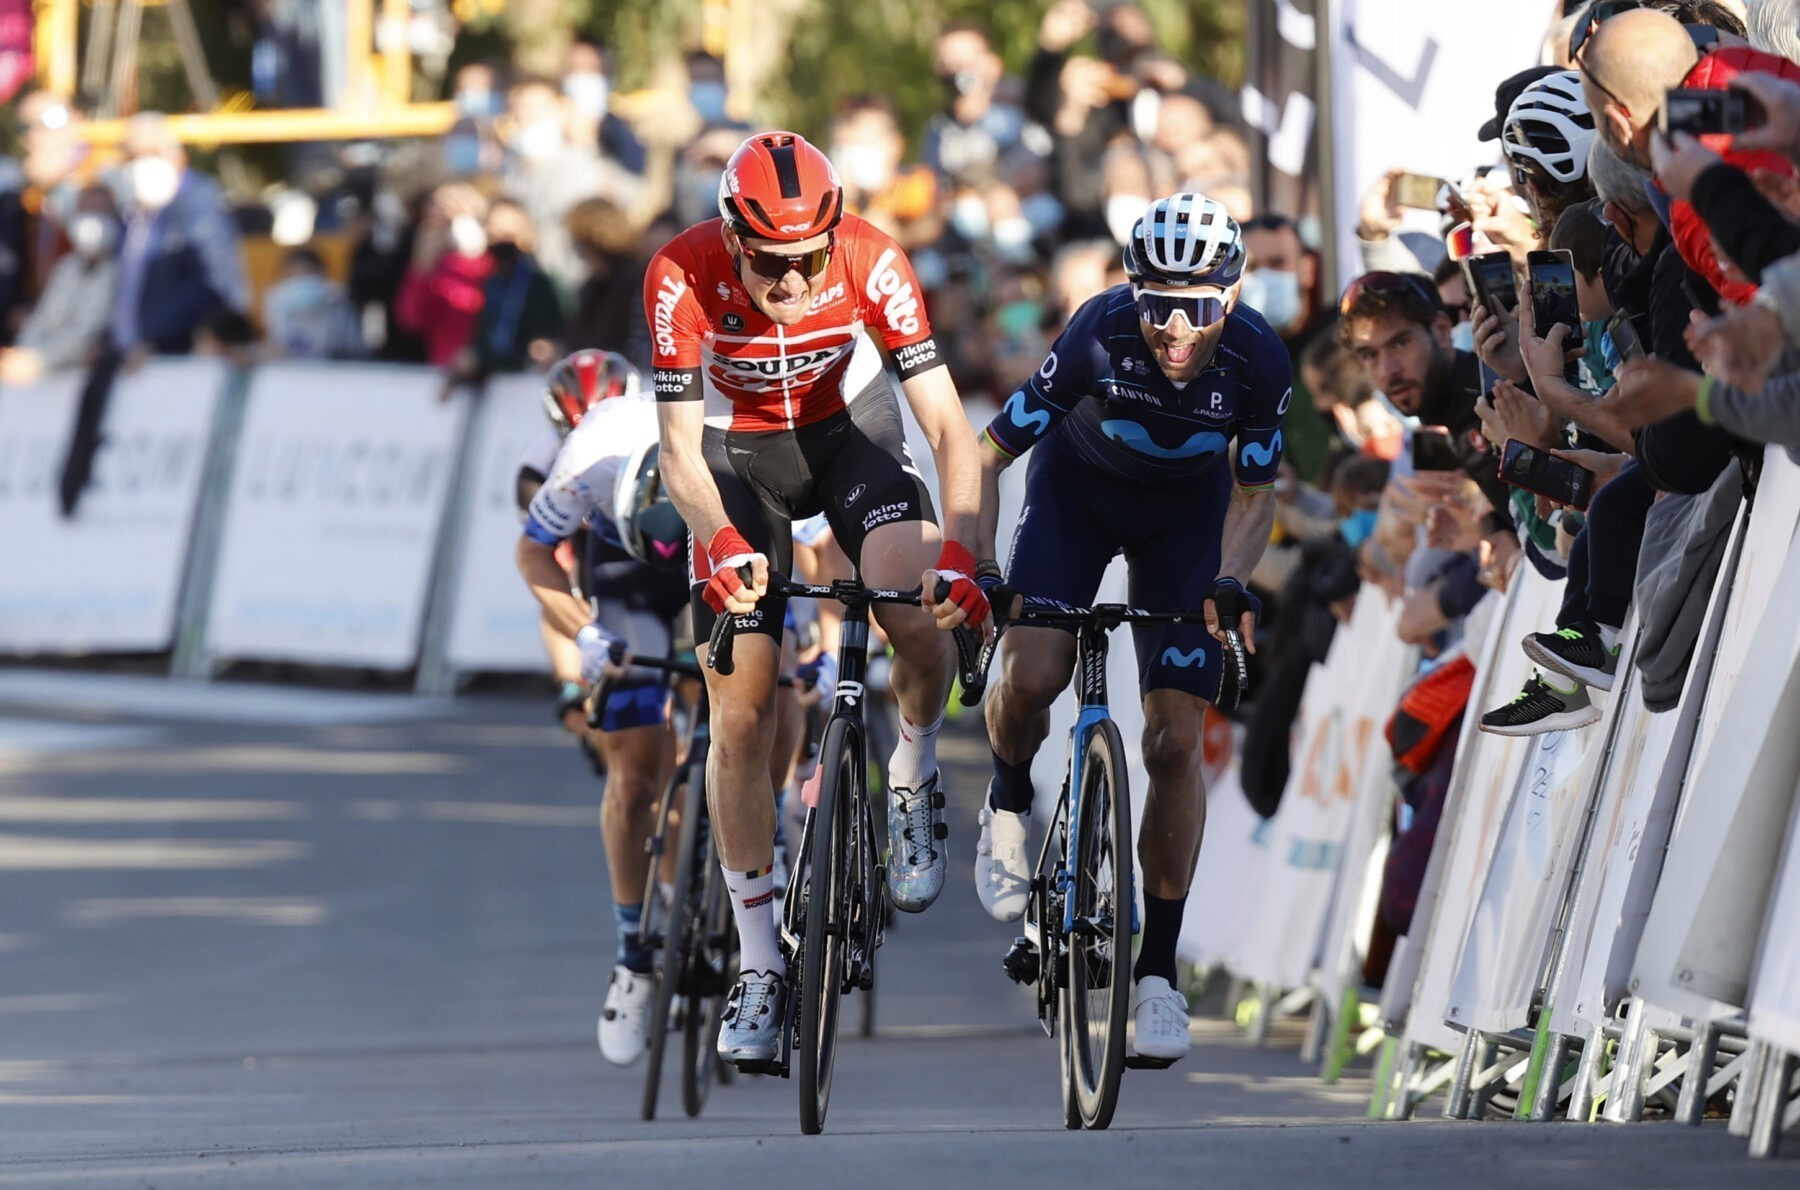 News' image‛El ‘Bala’ roza la primera: Valverde, 2º en el Trofeo Serra de Tramuntana’